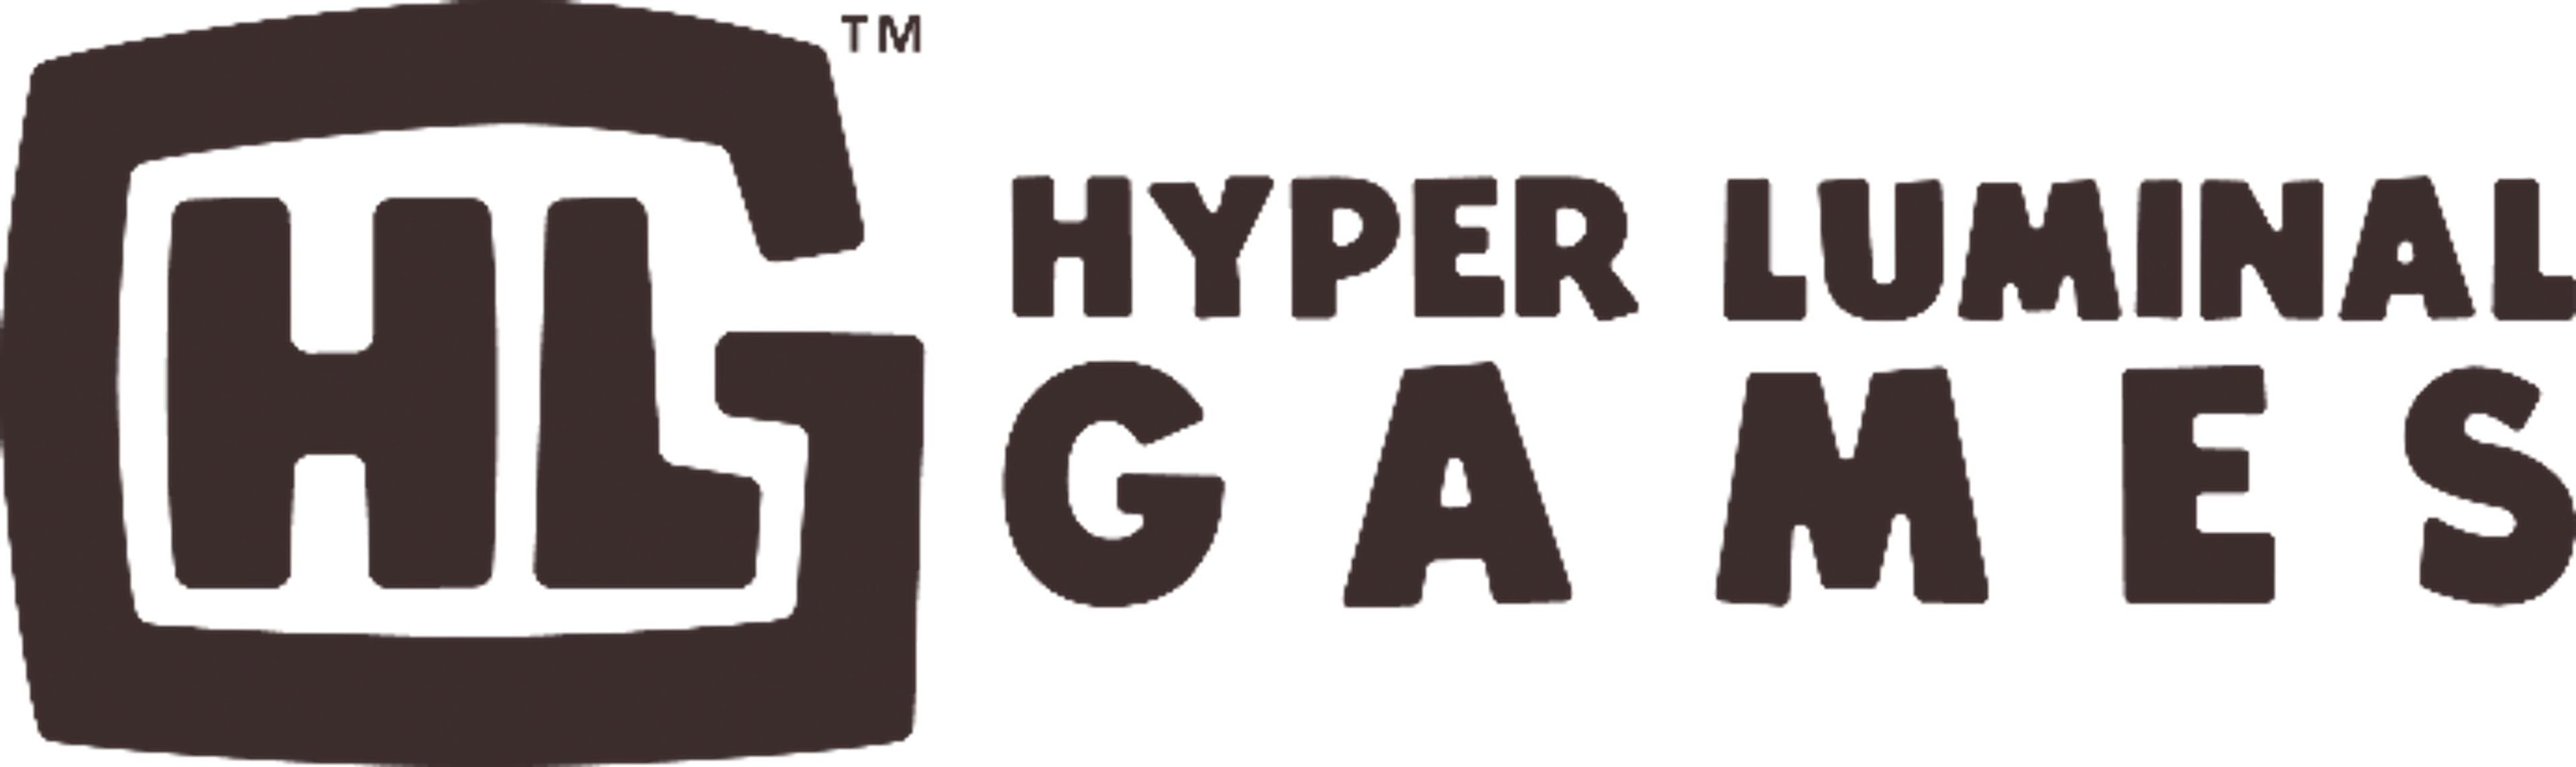 Hyper luminal games logo